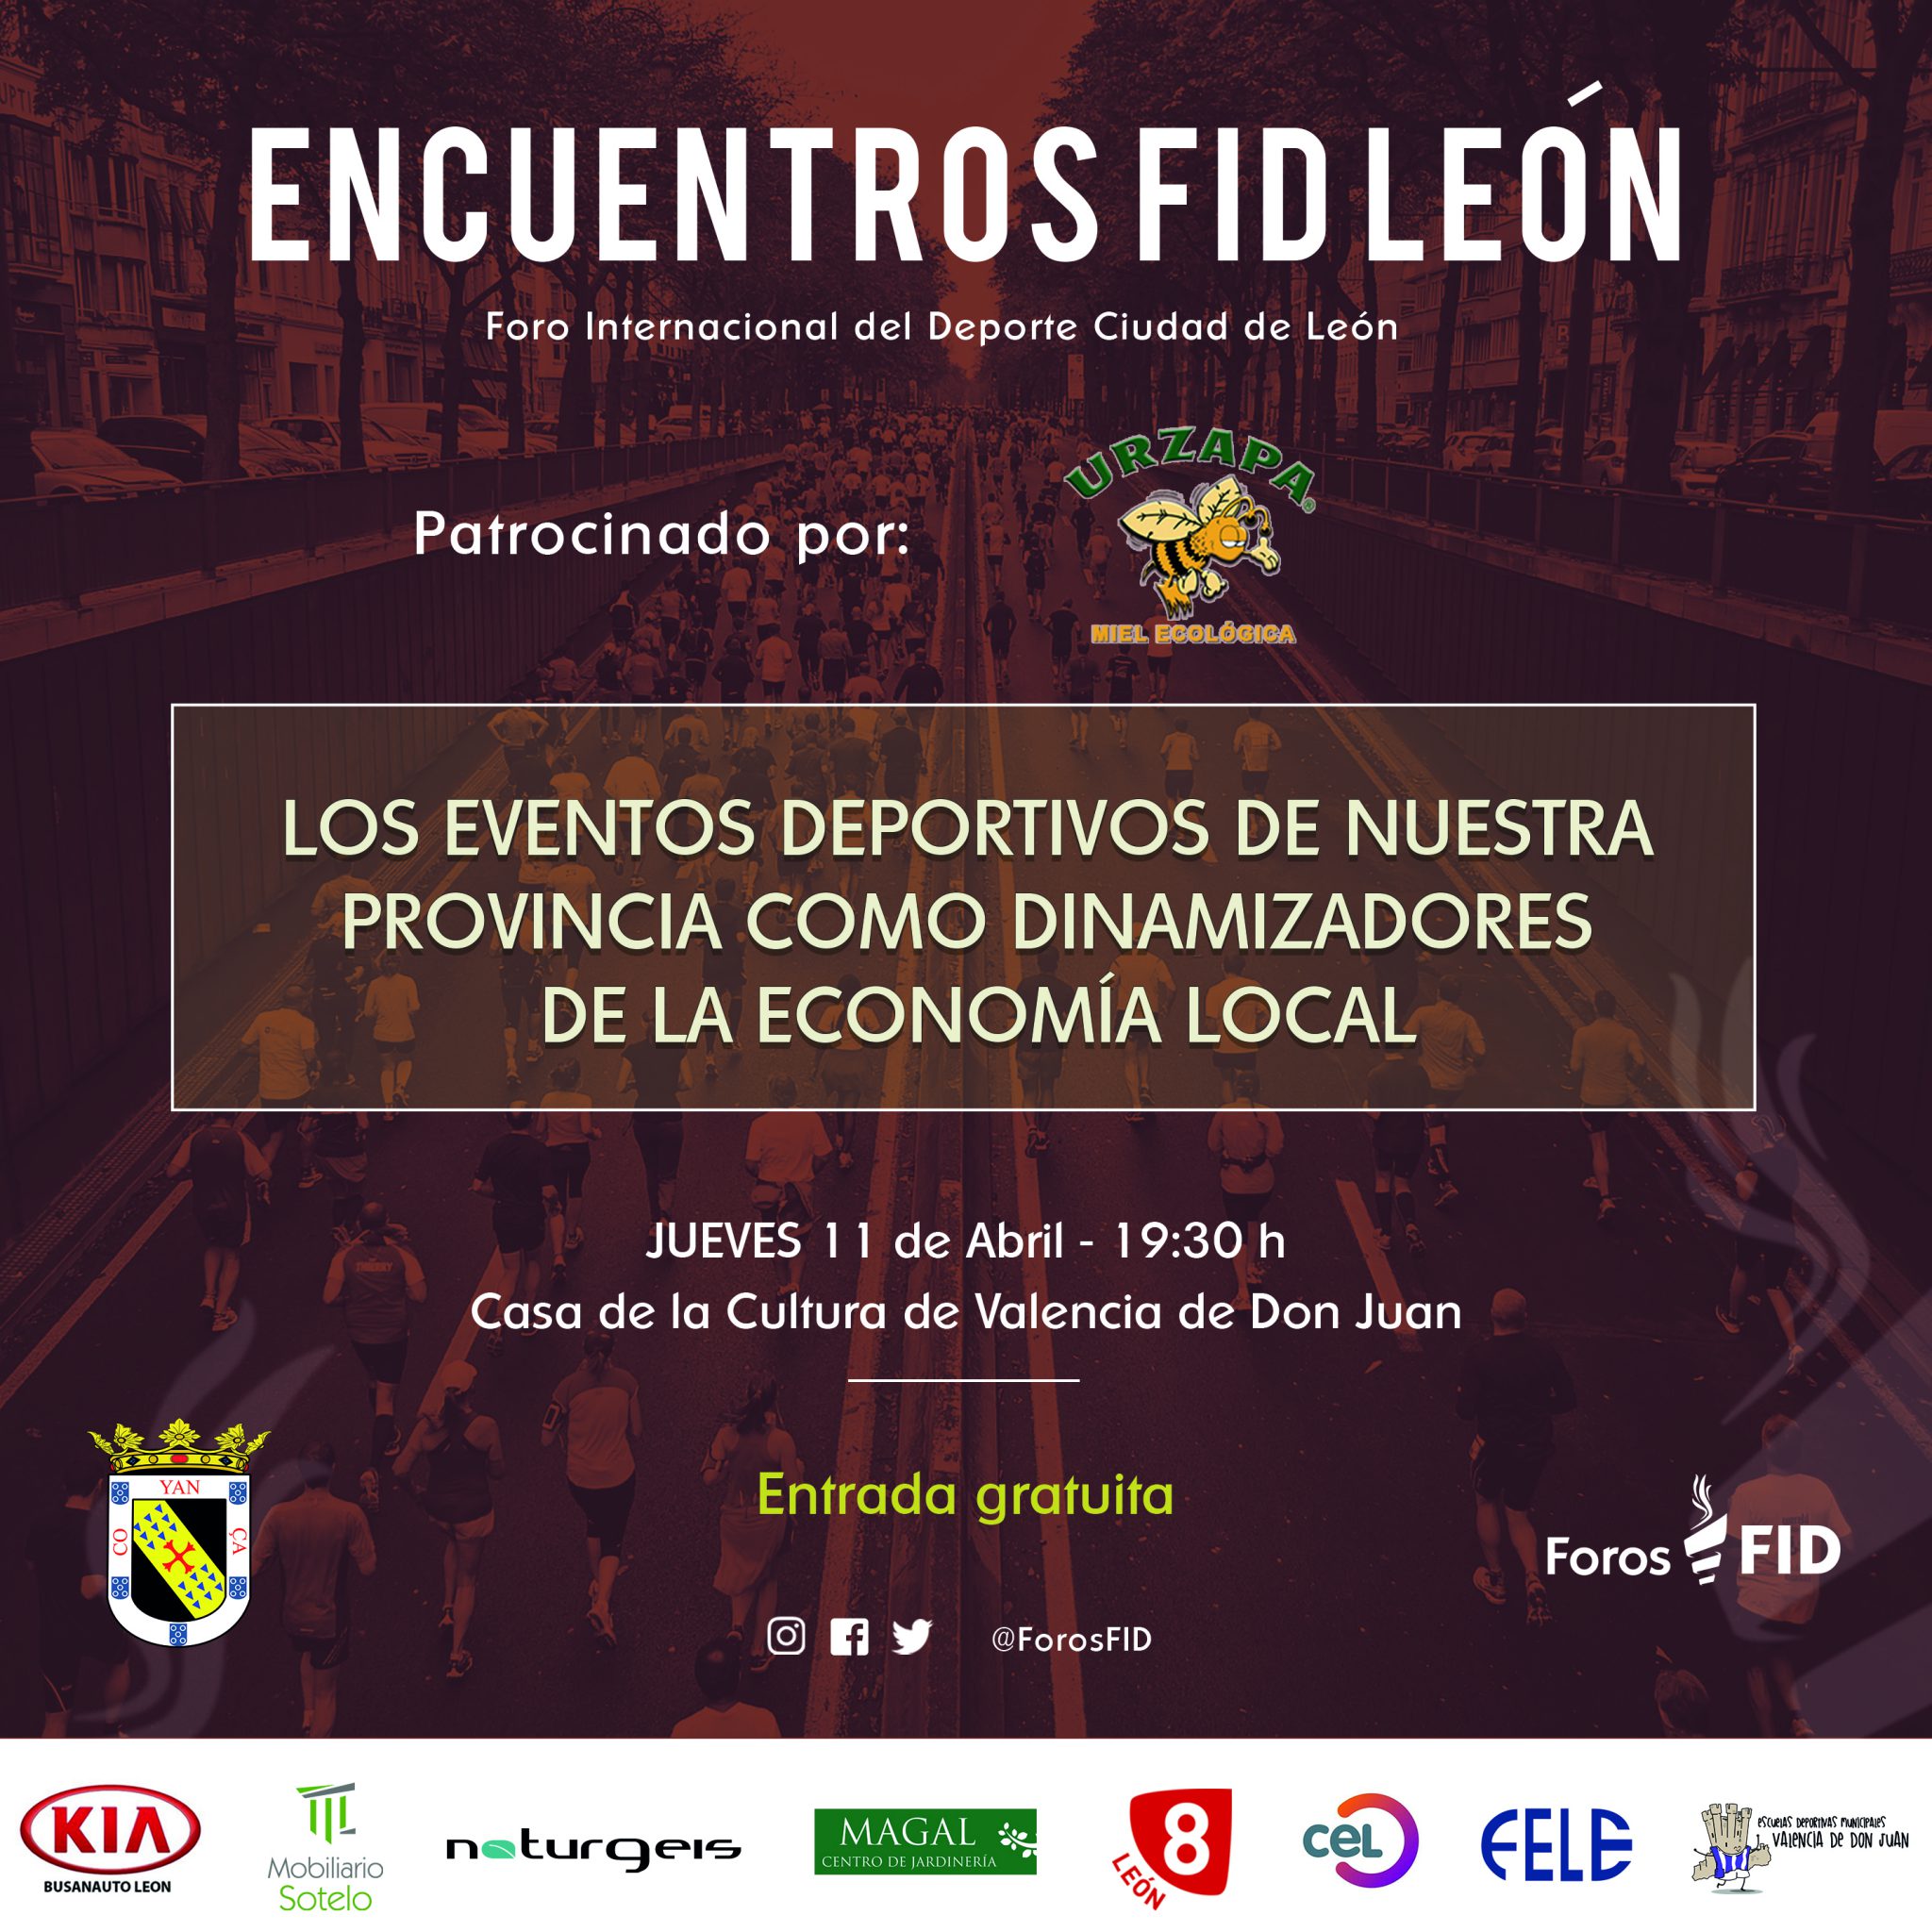 Encuentros FID León